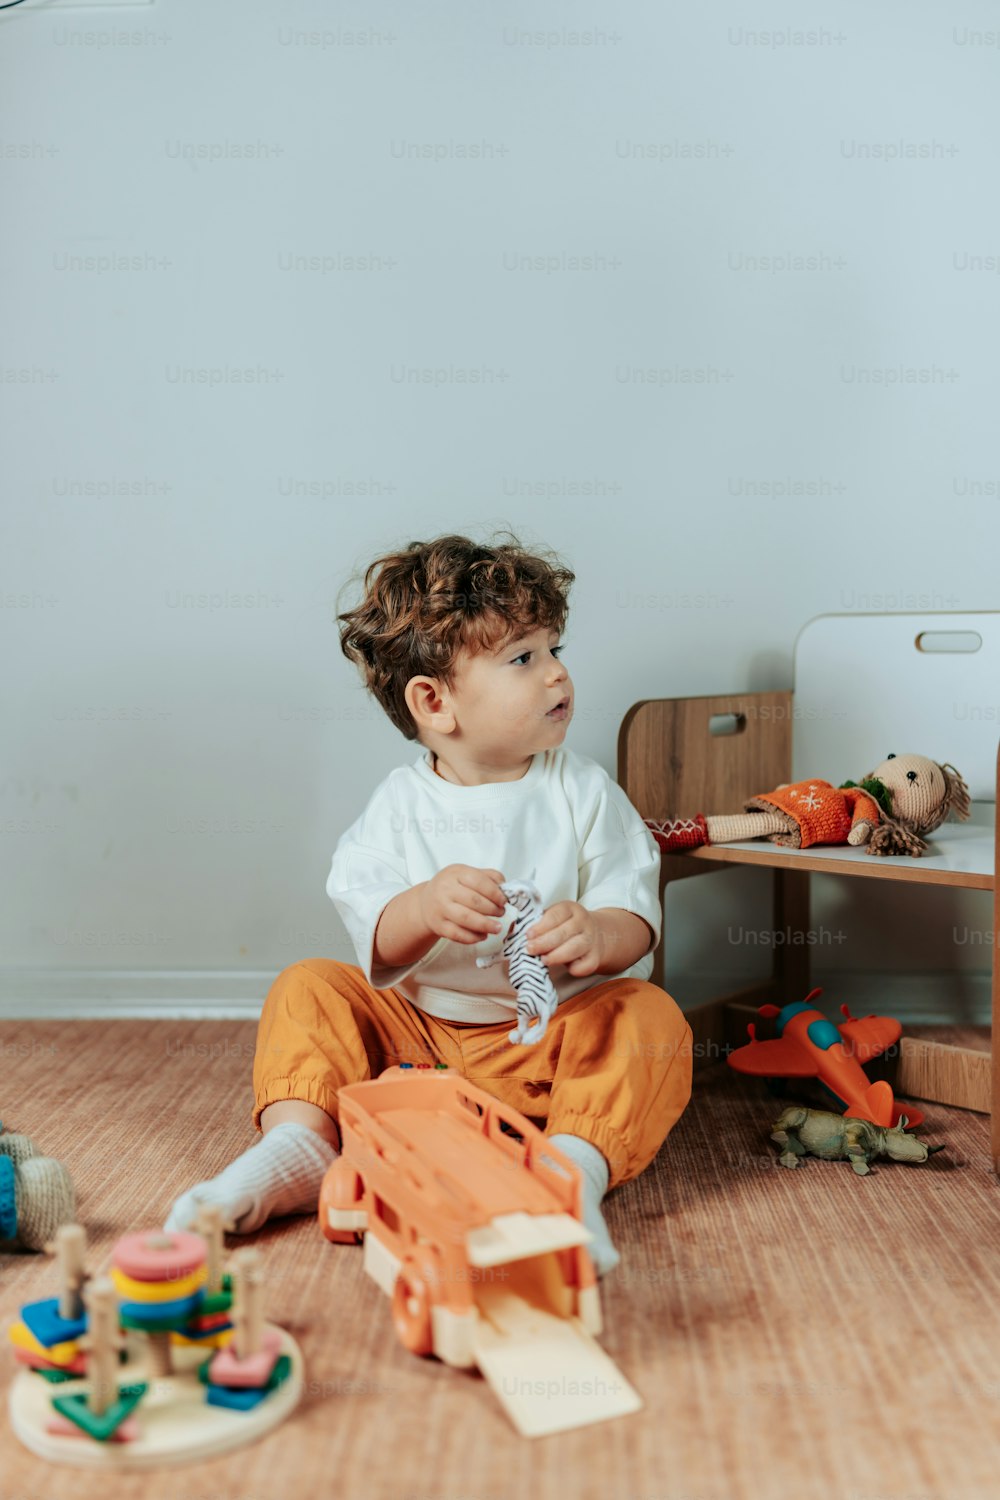 un petit garçon assis sur le sol jouant avec des jouets